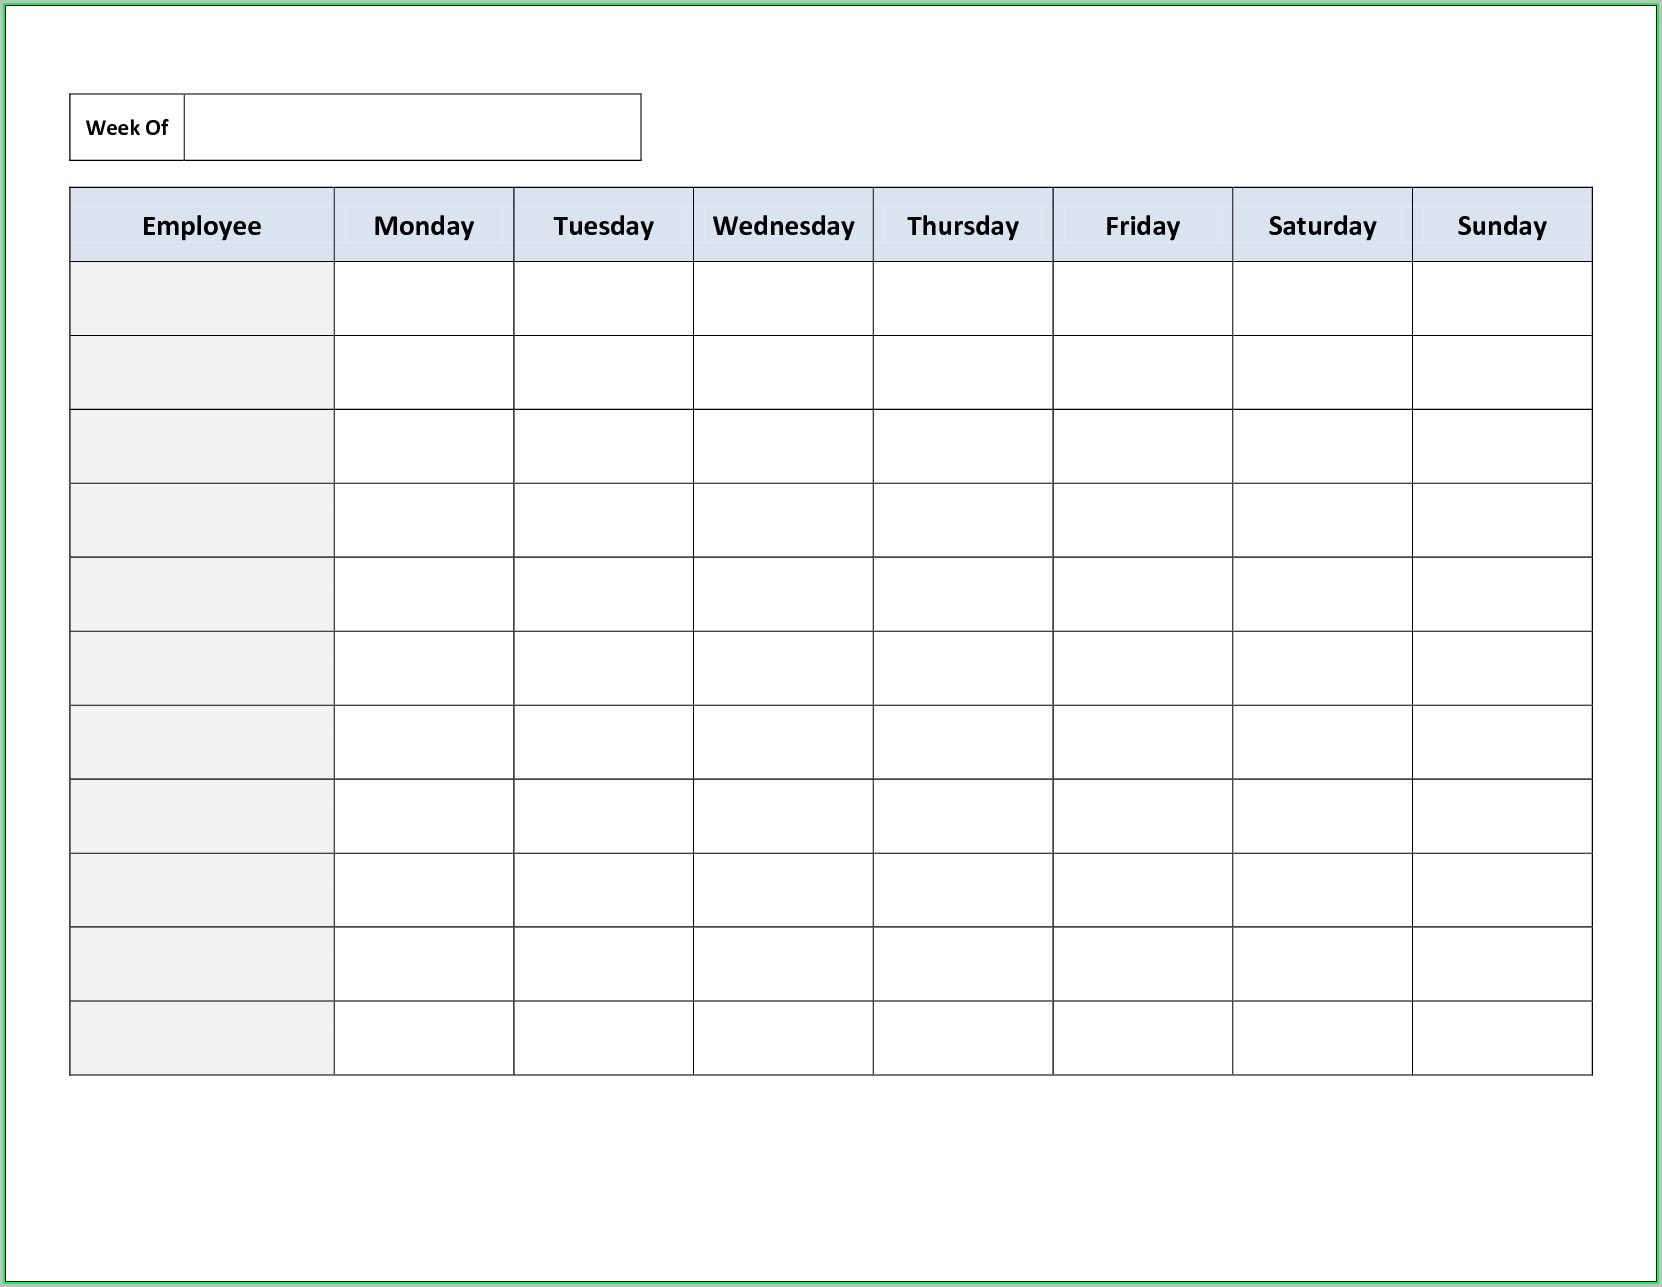 Free Printable Weekly Work Schedule Template